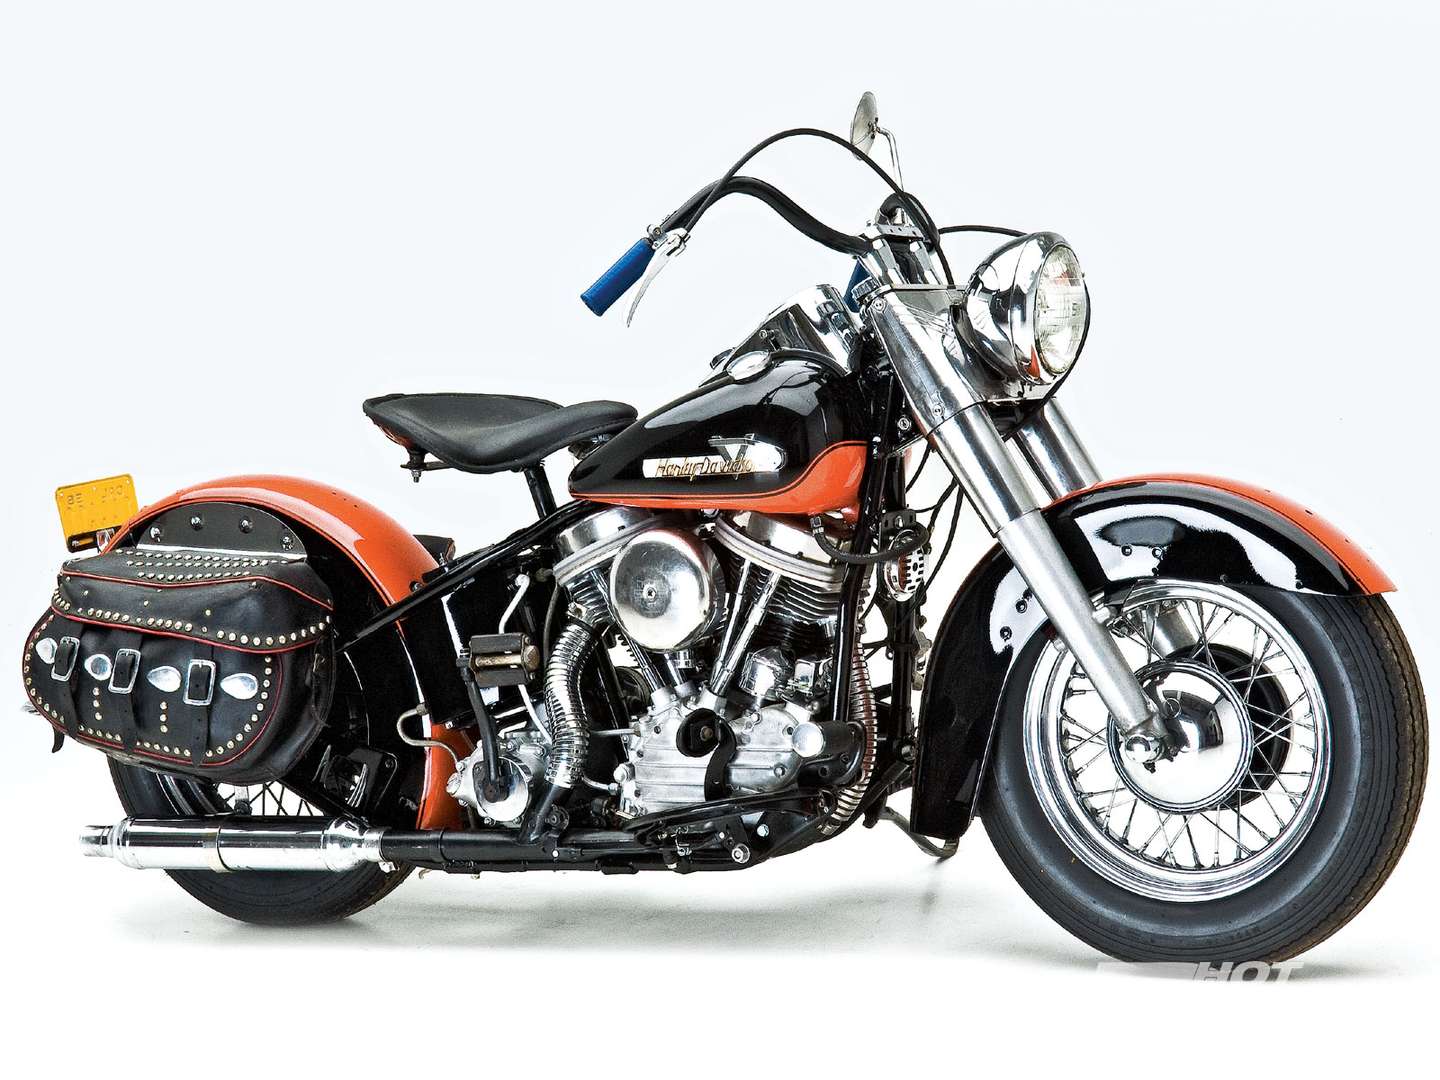 Harley-Davidson_Panhead